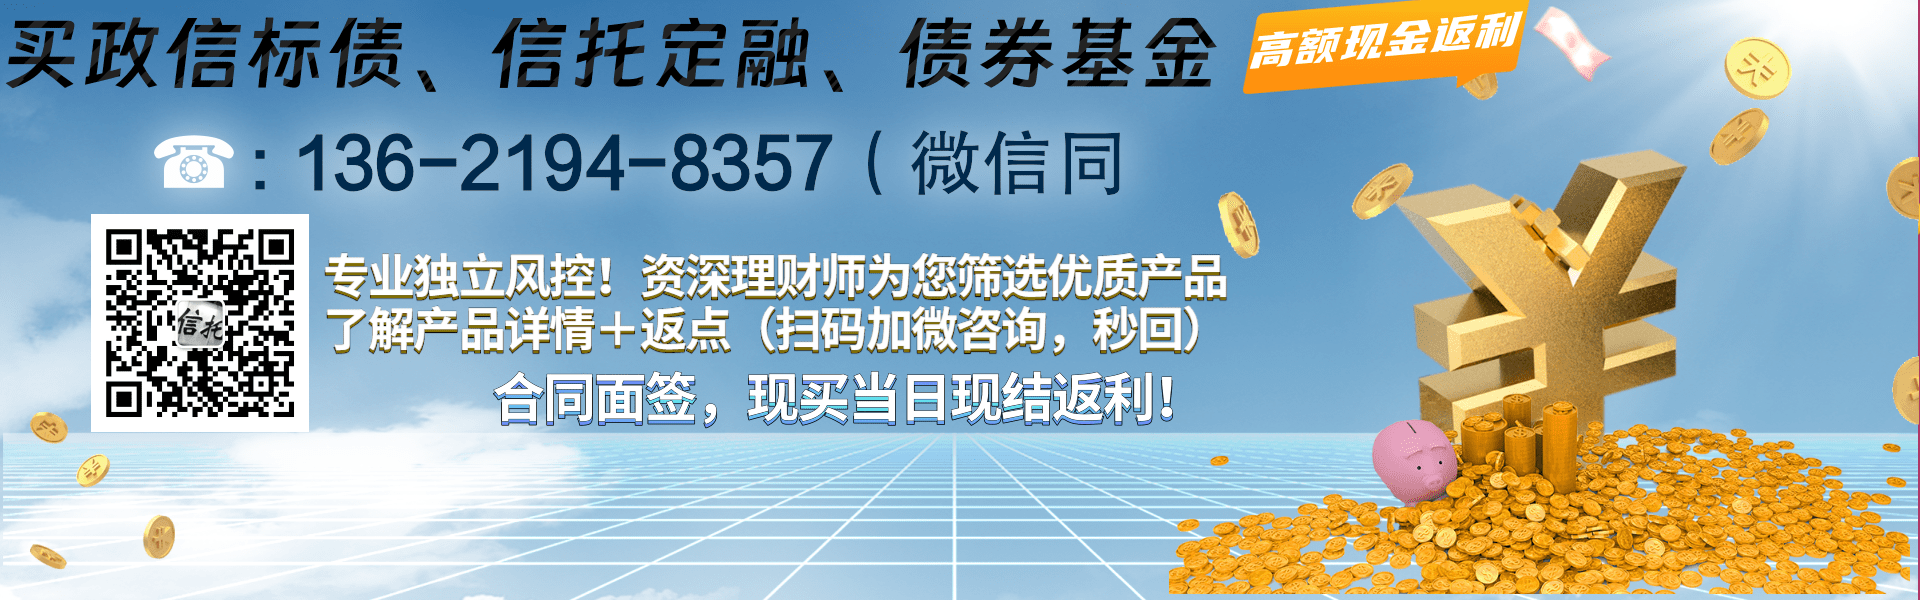 民生信托-1272号苏中最强经济区泰兴非标集合资金信托计划